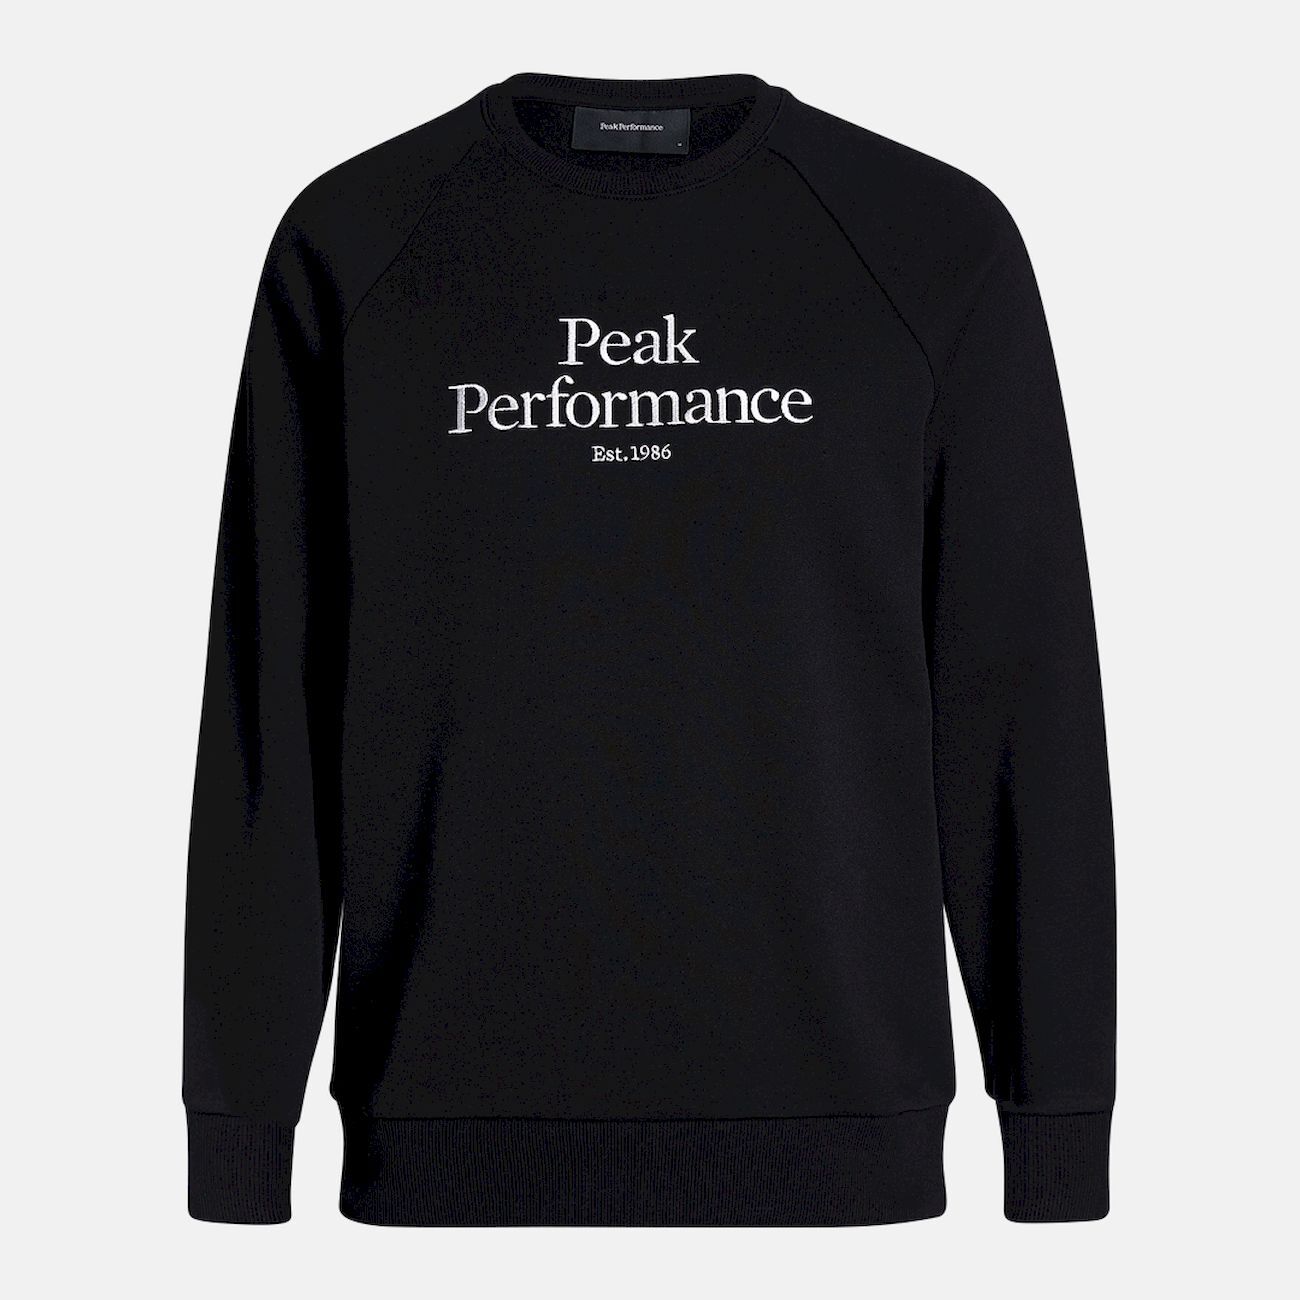 Peak Performance Original Crew - Pullover - Herren